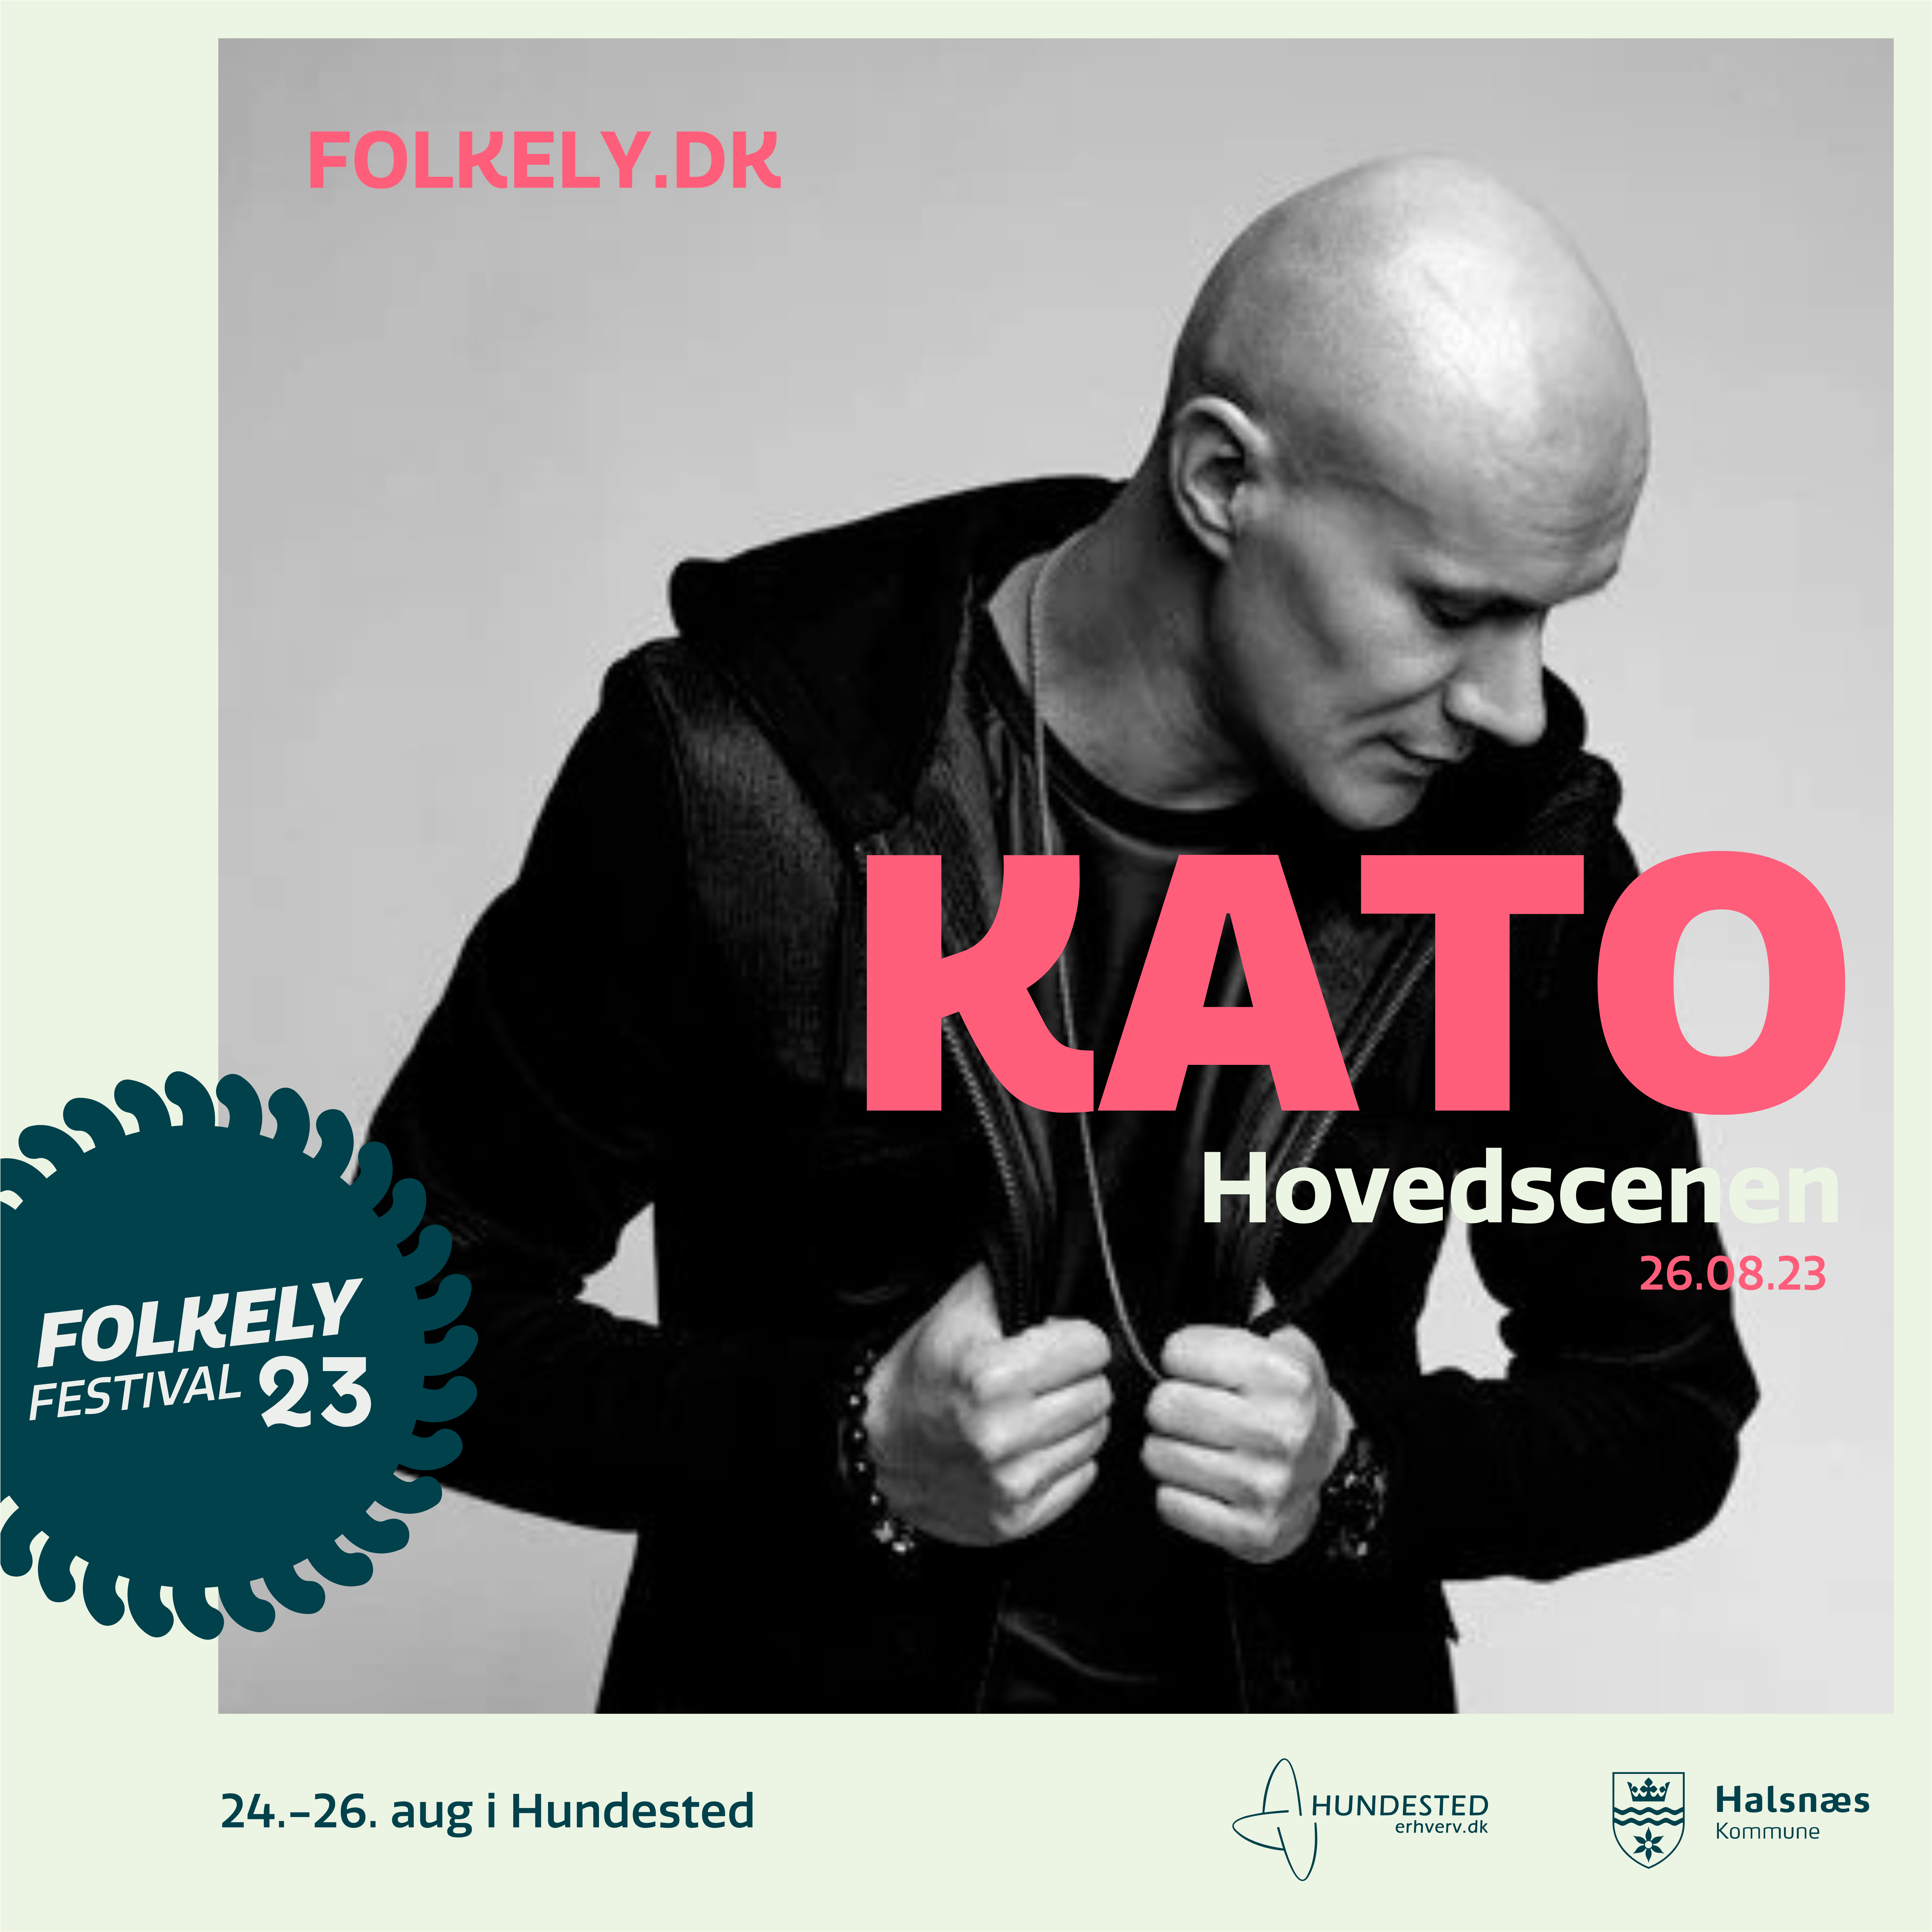 Kato Folkely Festival 2023, kato Folkely, Hundested, Kato live 2023, Koncerter i nordjsælland 2023